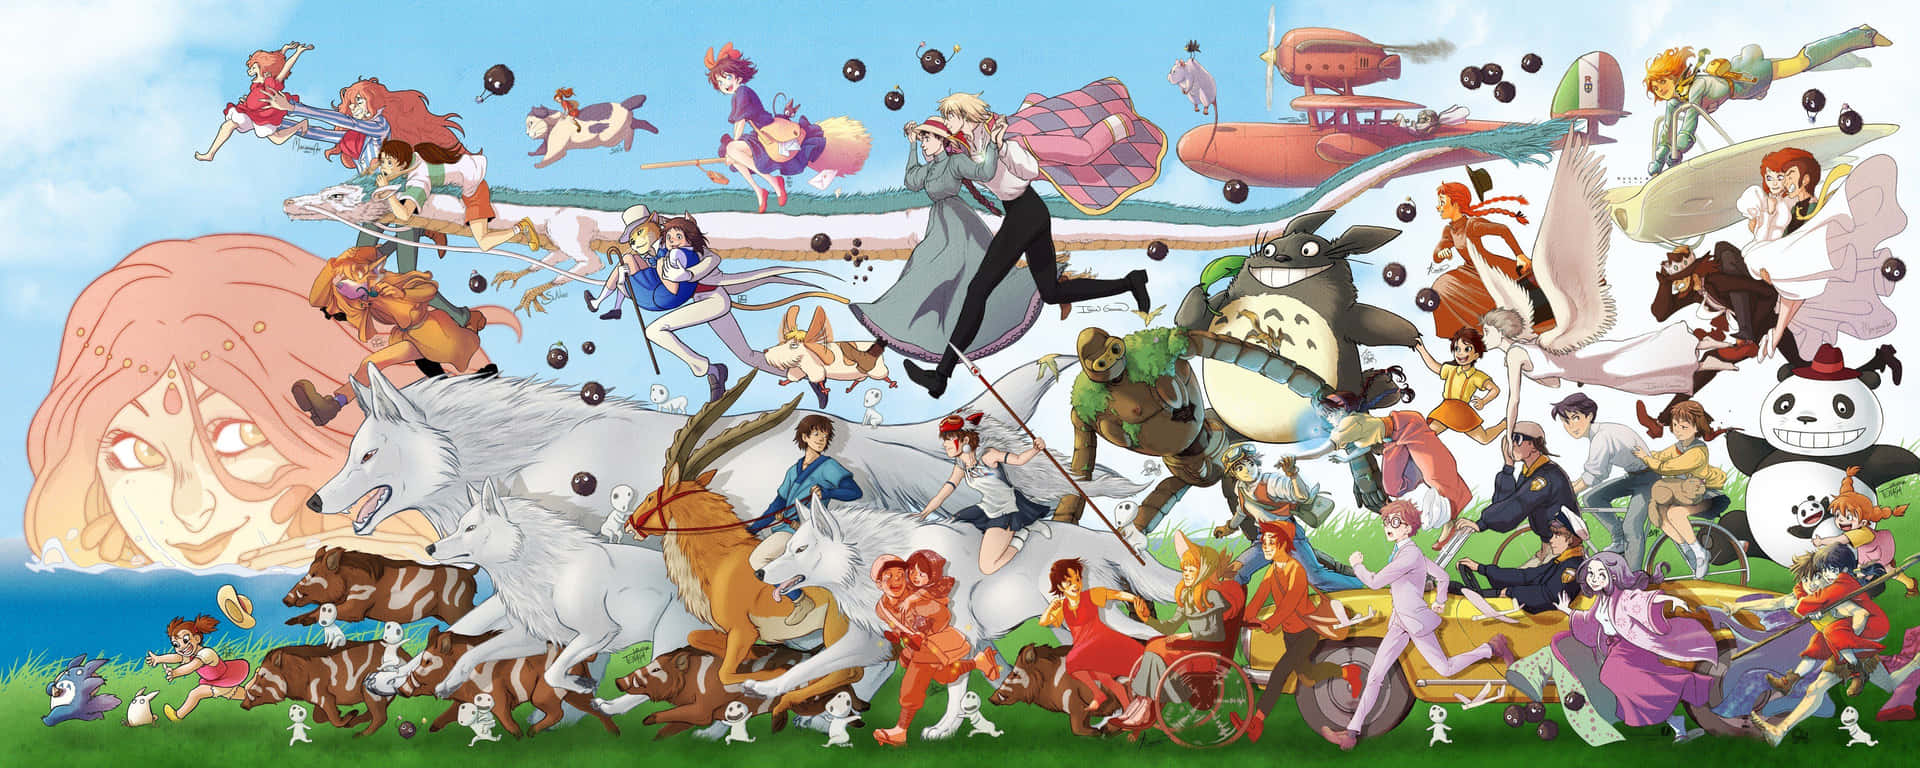 Entdeckedas Epische Fantasy-abenteuer Von Studio Ghiblis Prinzessin Mononoke Wallpaper